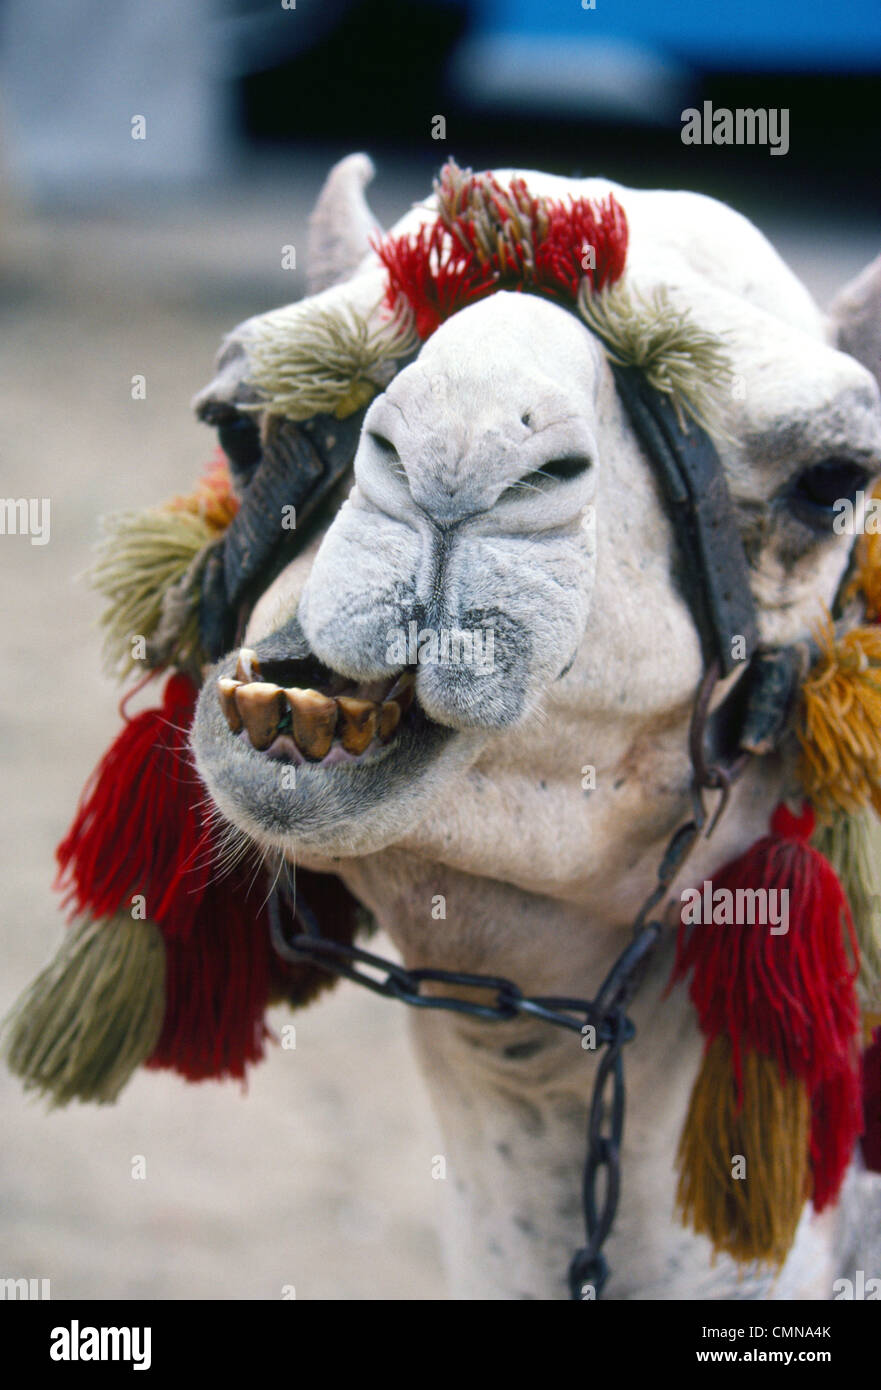 Un ruminant chameau touristiques montre ses dents sales en attendant les coureurs près de la fameuse Pyramides de Gizeh à l'extérieur du Caire, en Égypte, en Afrique du Nord. Banque D'Images